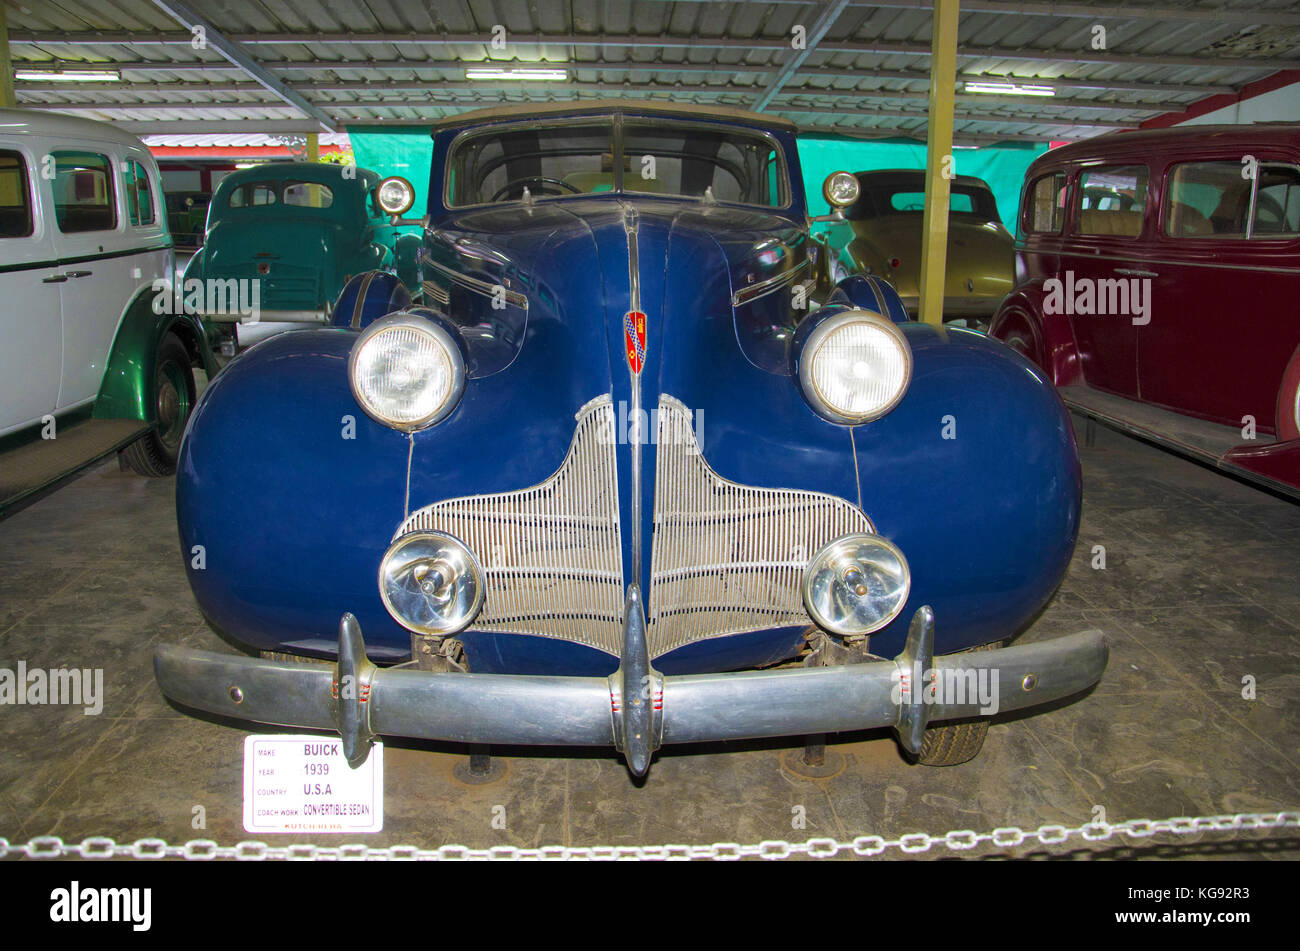 Buick (anno 1939), coach lavoro - Cabrio, Stati Uniti d'America. auto mondo vintage car museum, Ahmedabad, Gujarat, India Foto Stock